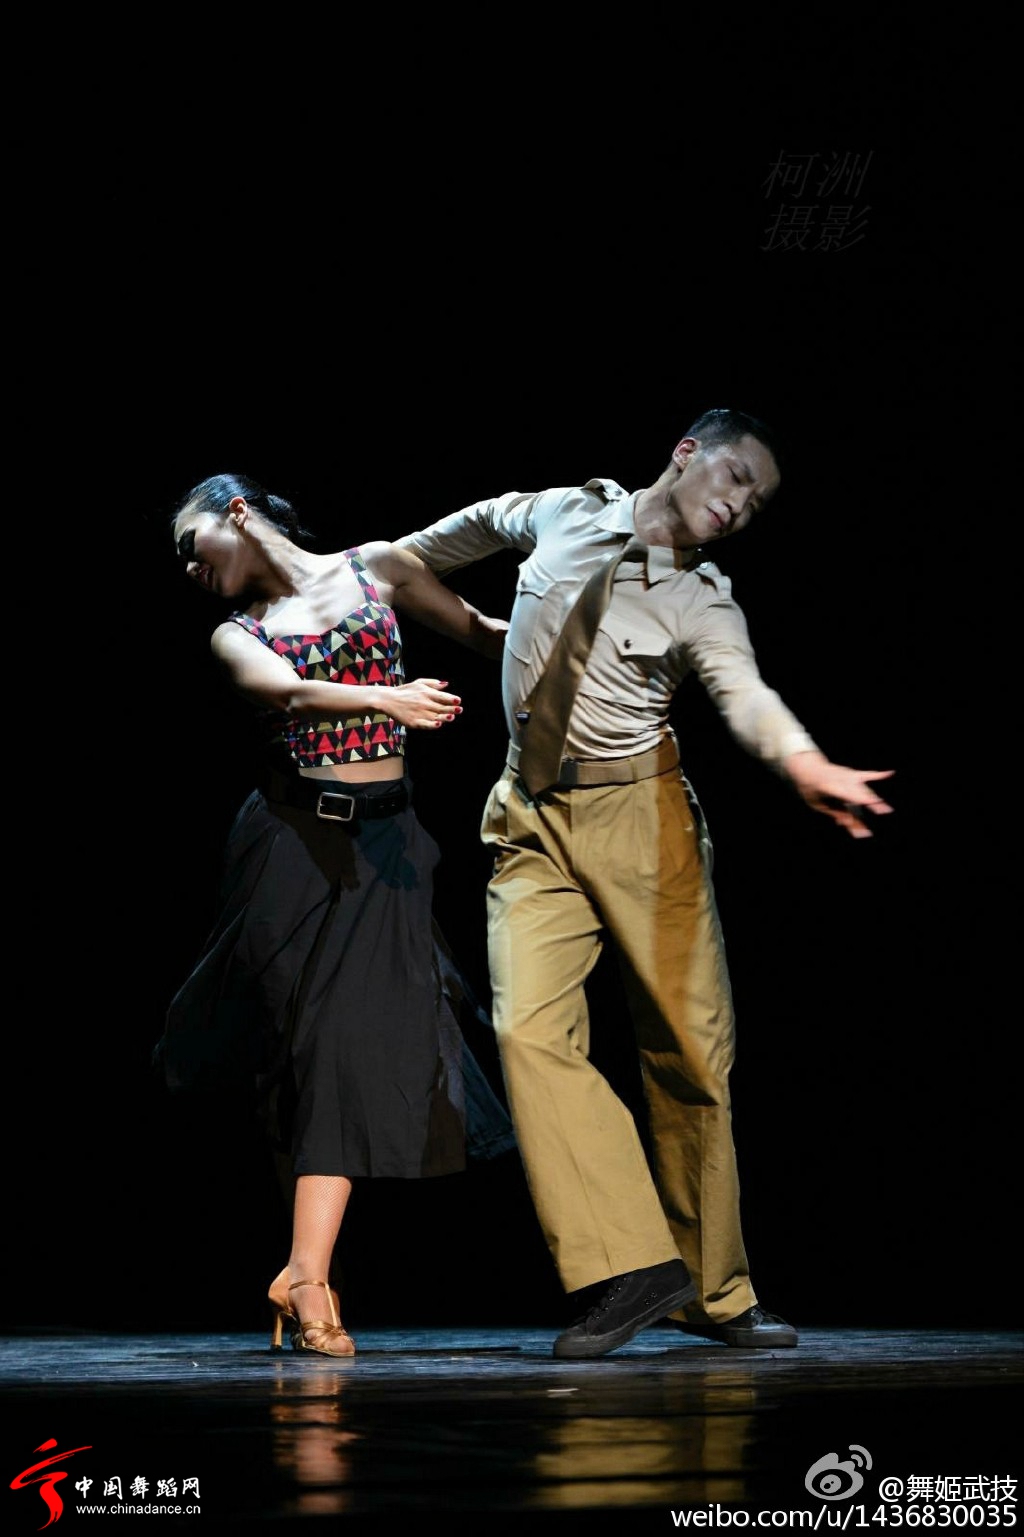 北京舞蹈学院社会舞蹈系2012级国标班毕业晚会13.jpg